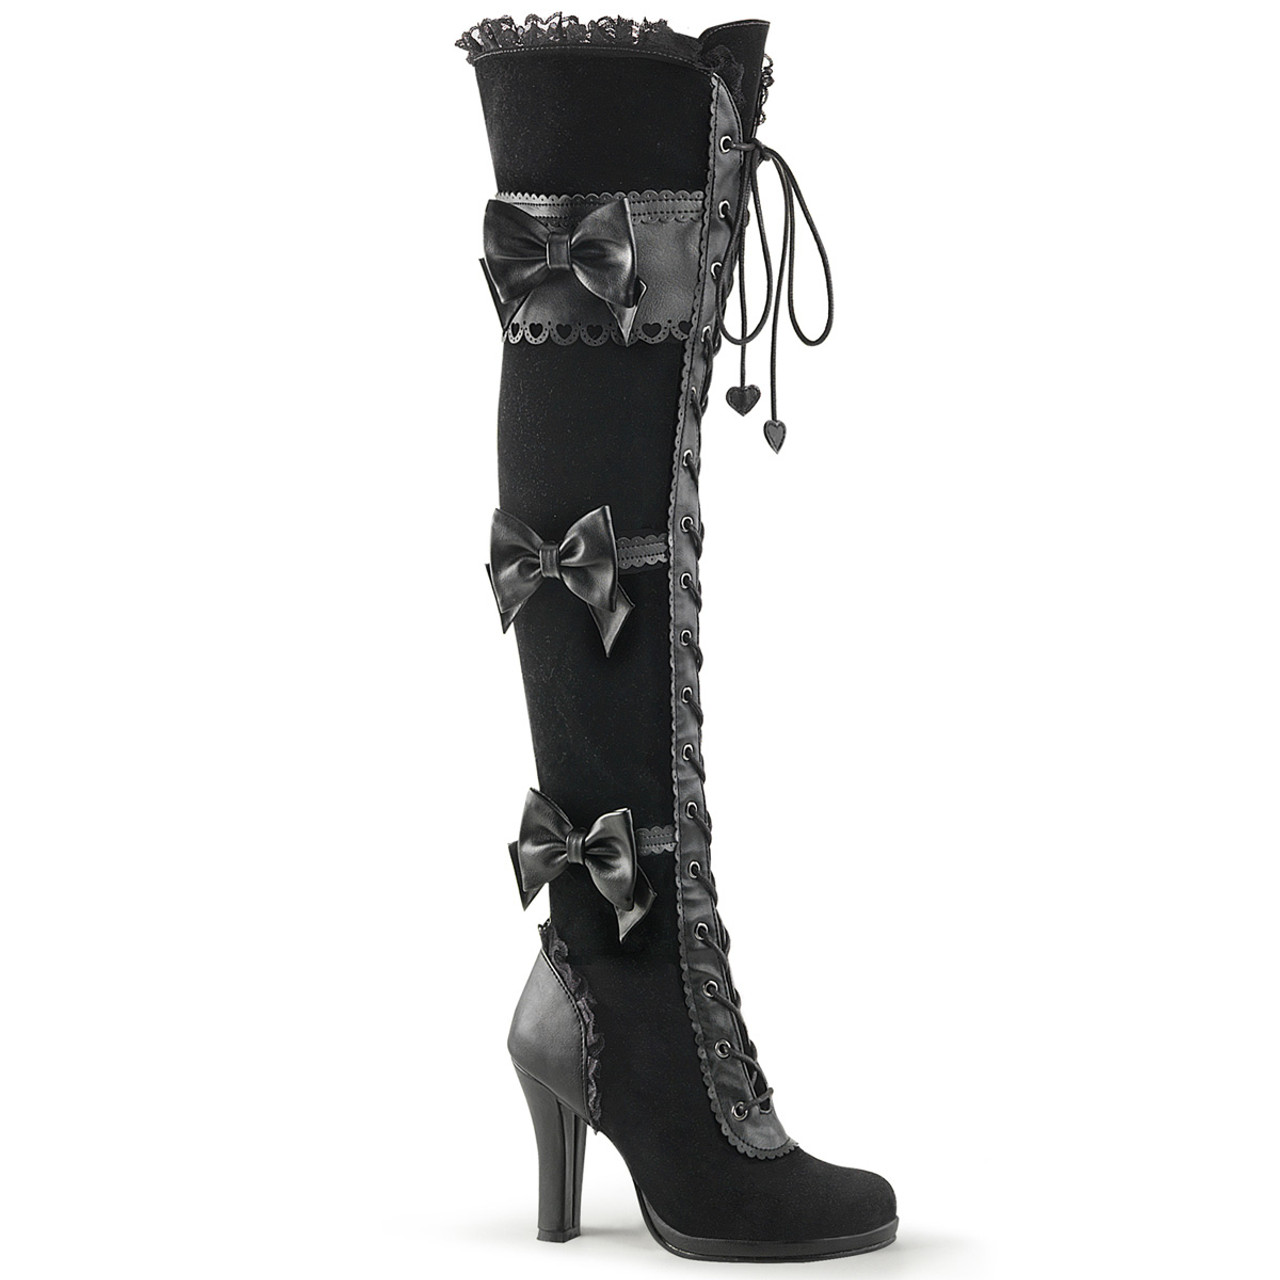 black over the knee boots 2 inch heel